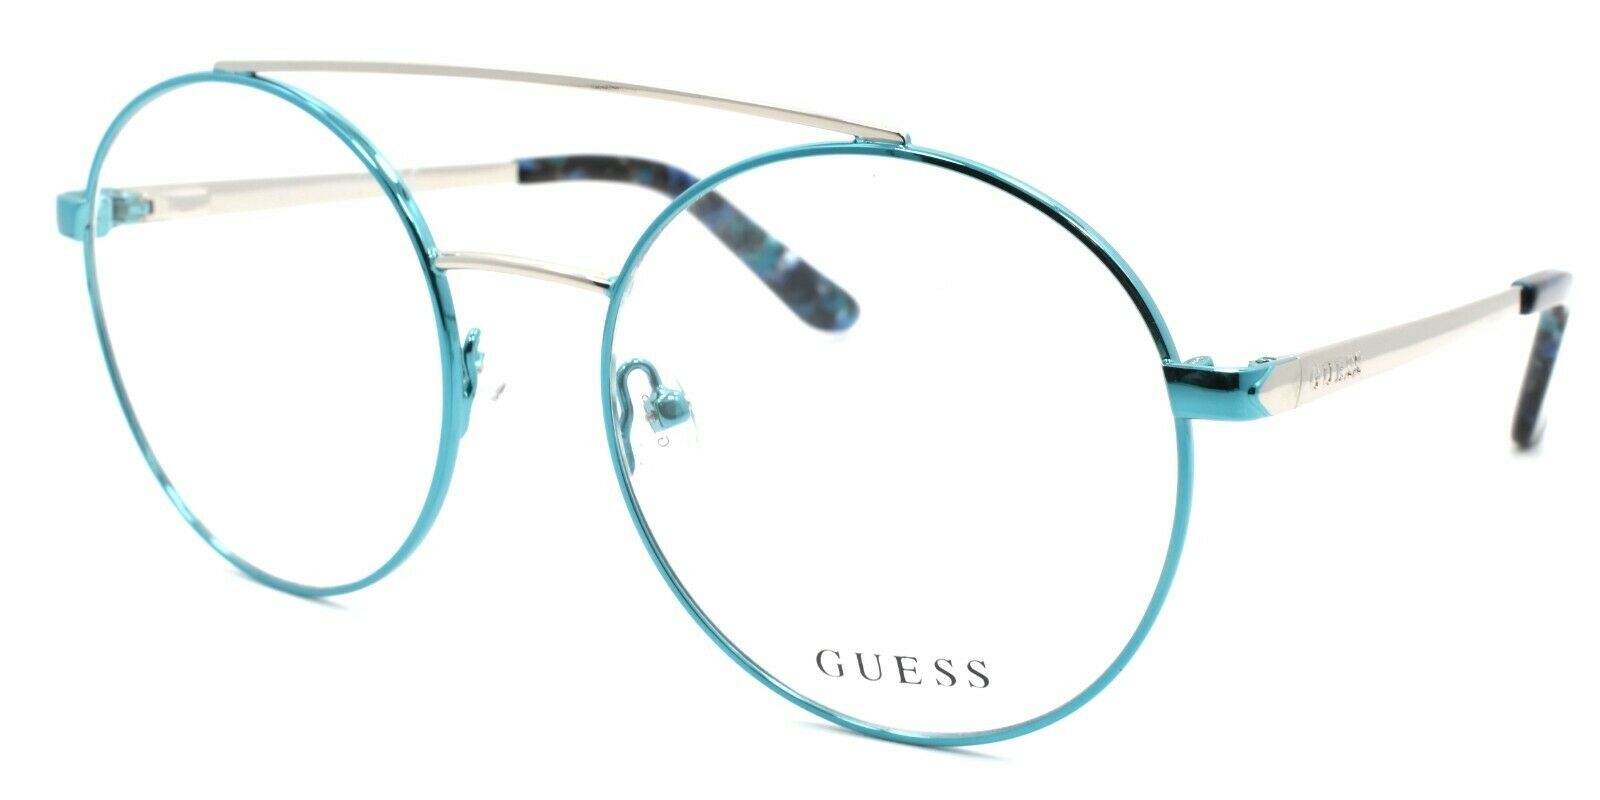 1-GUESS GU2714 084 Women's Eyeglasses Frames Aviator 52-18-135 Shiny Light Blue-889214034120-IKSpecs